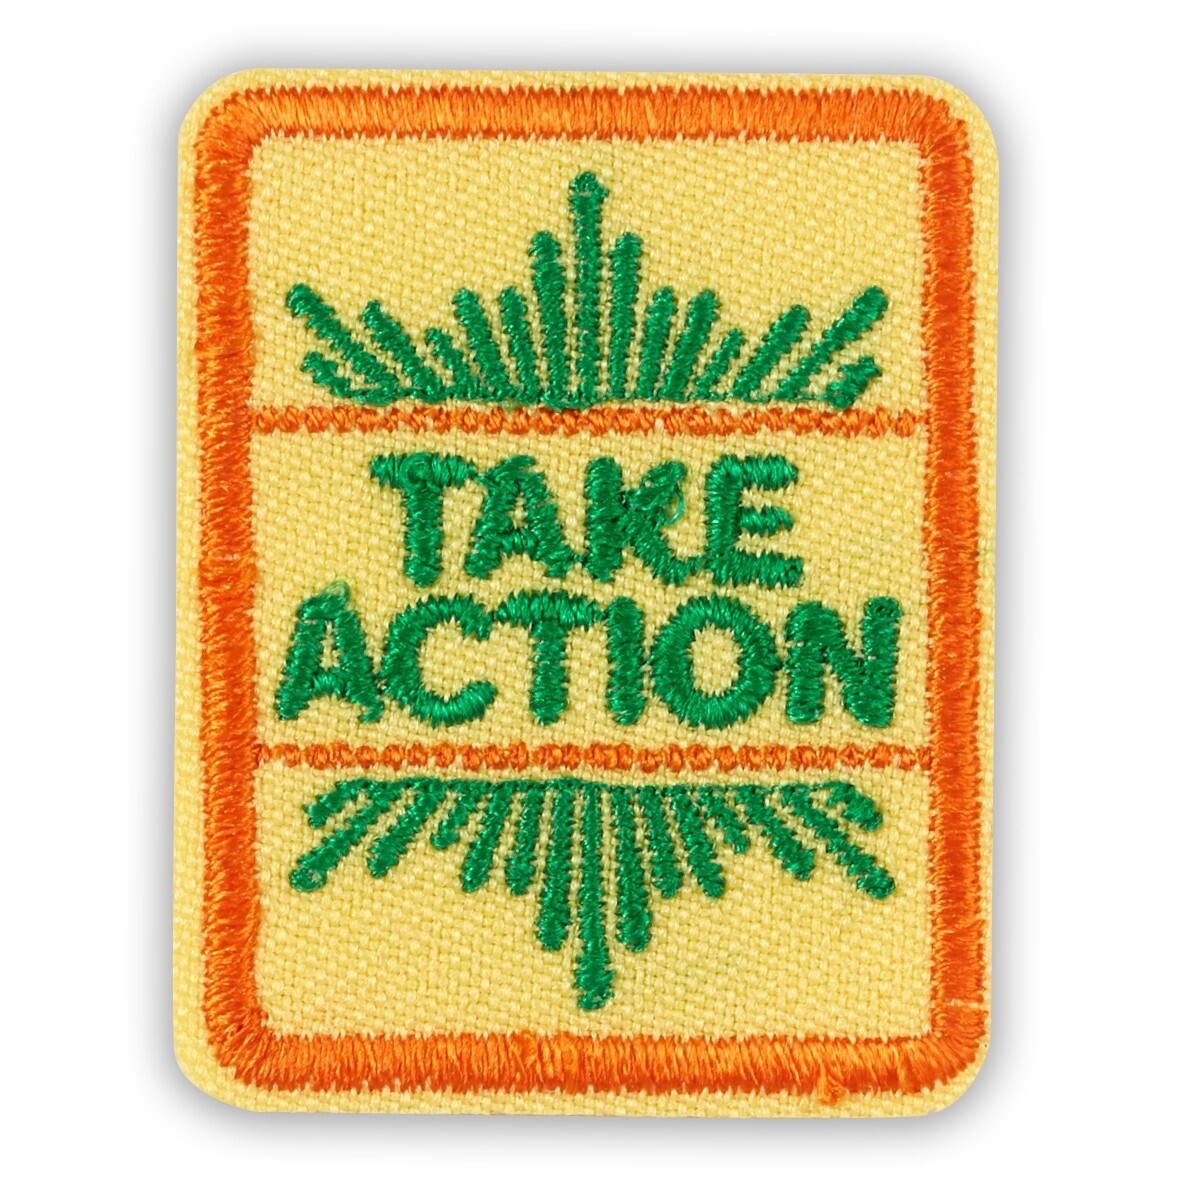 Senior Take Action Award Badge